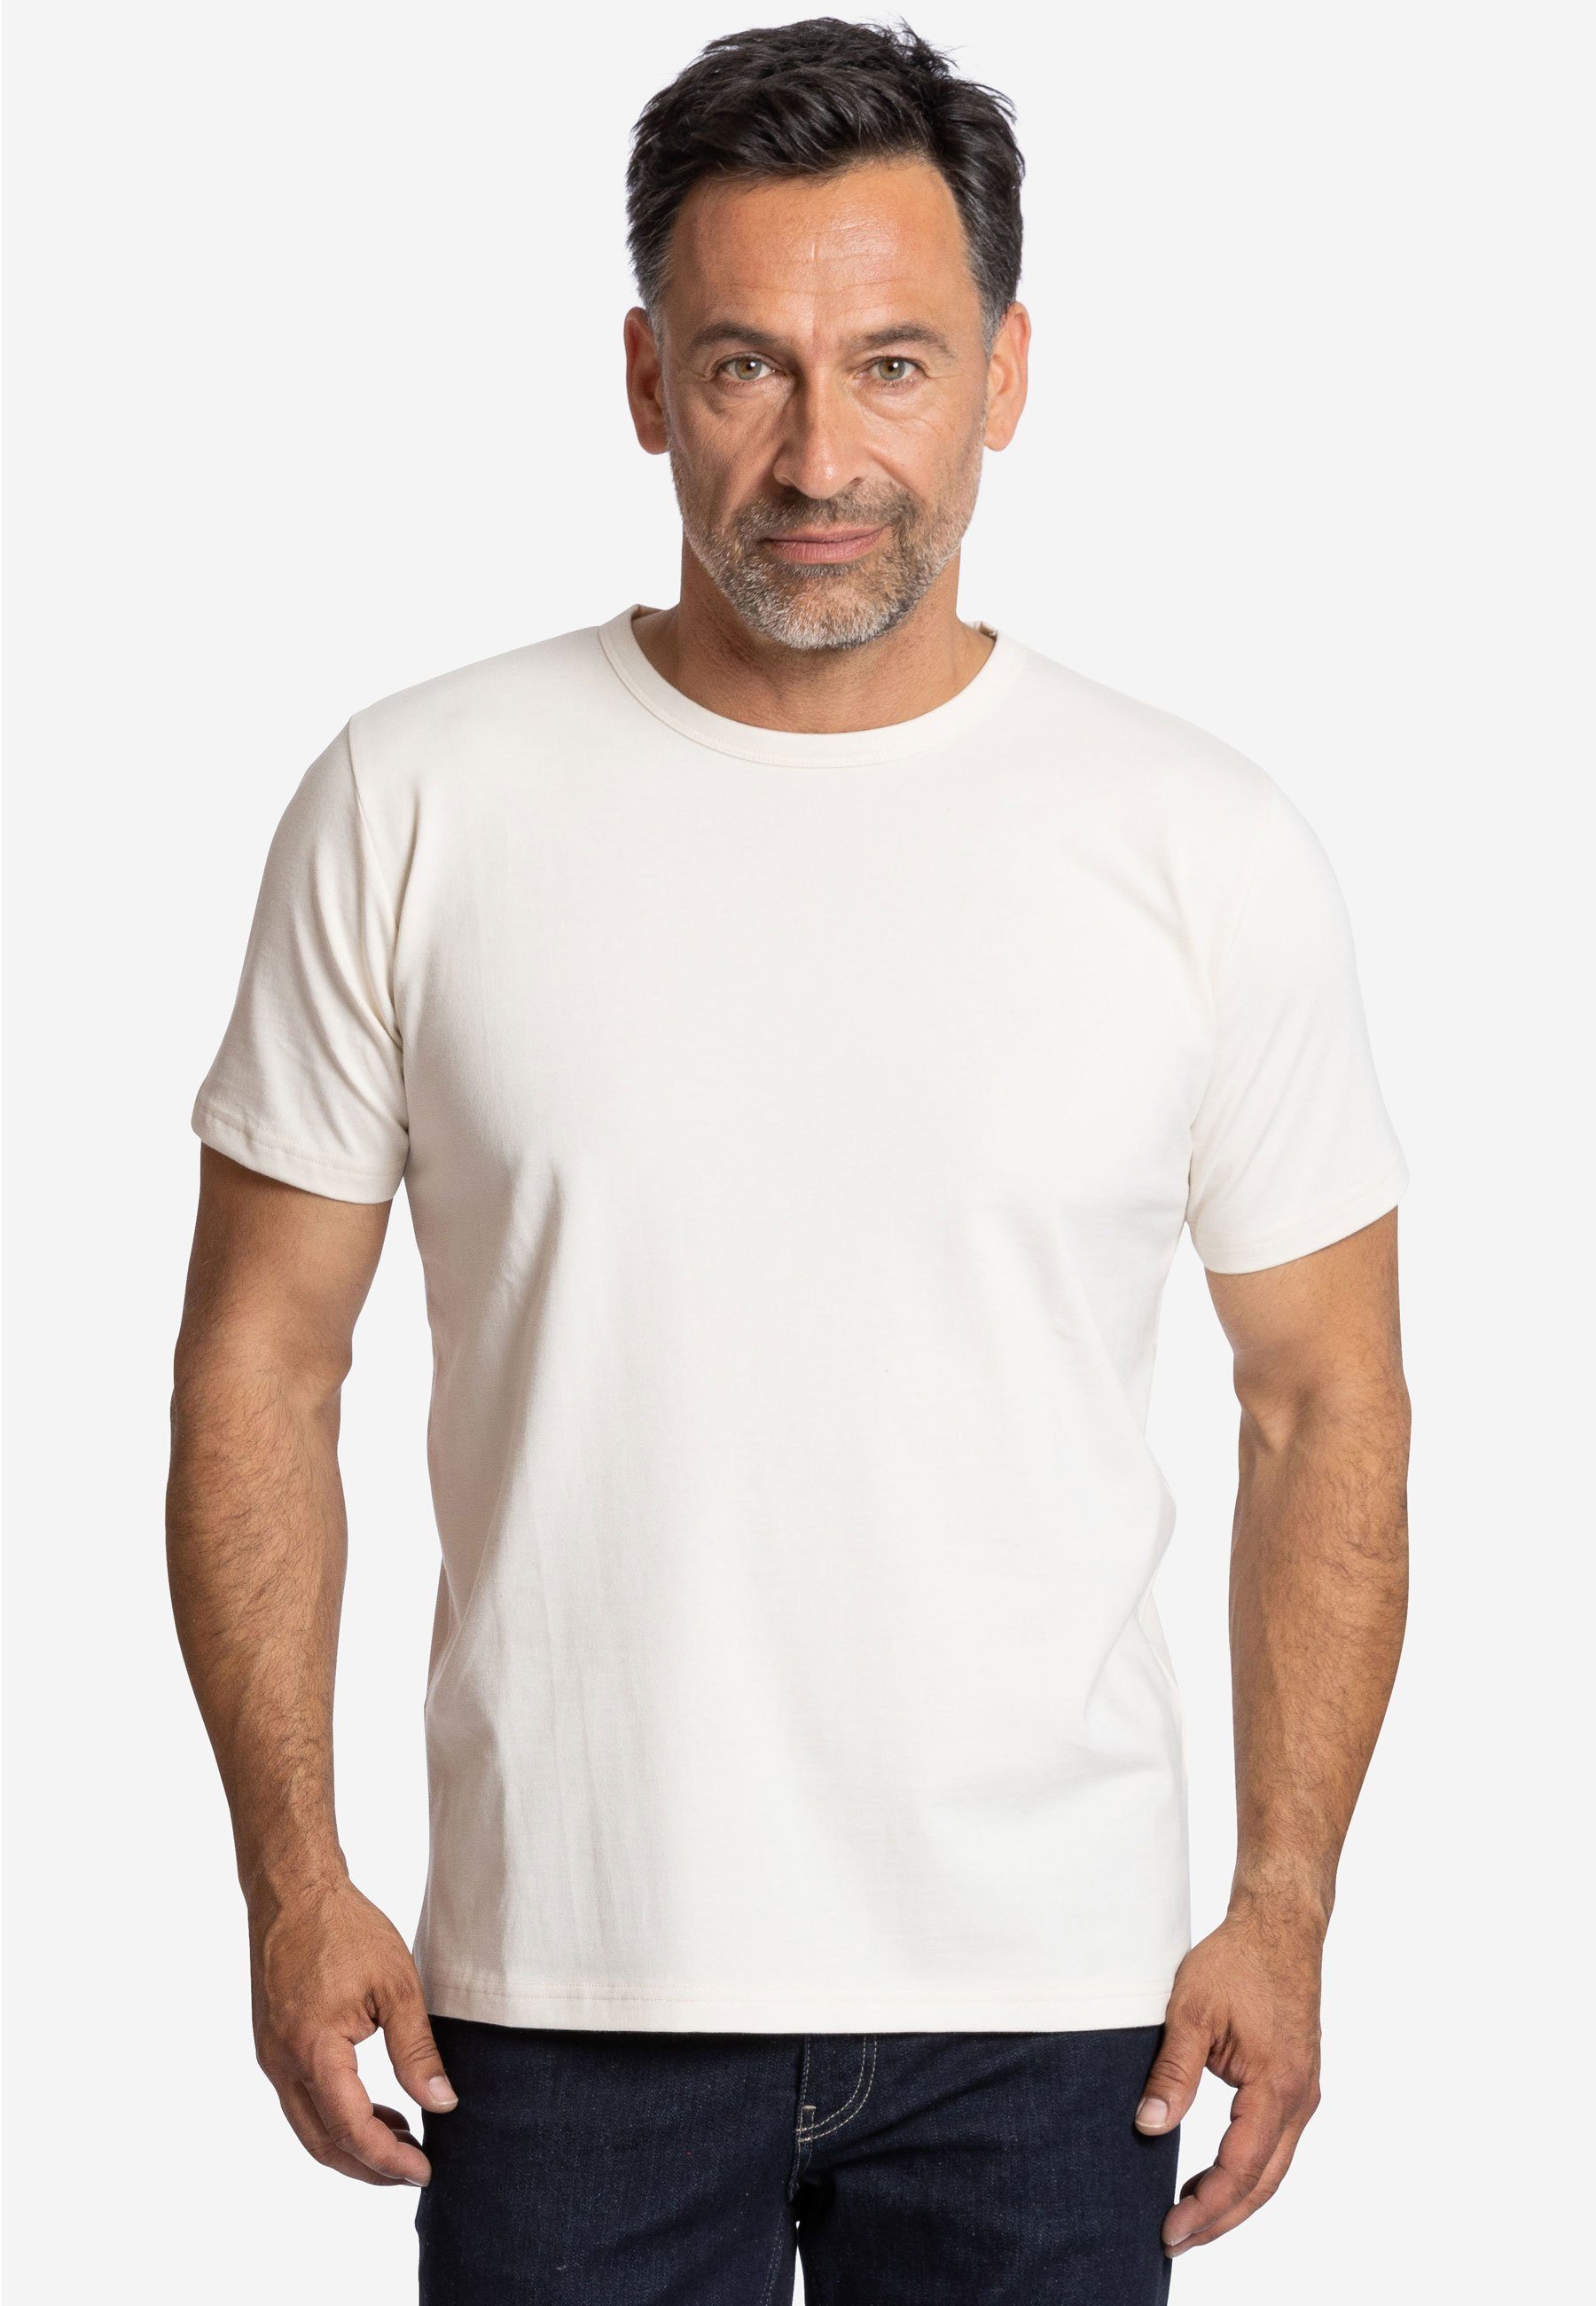 Elkline T-Shirt Natürlich biologisch abbaubar